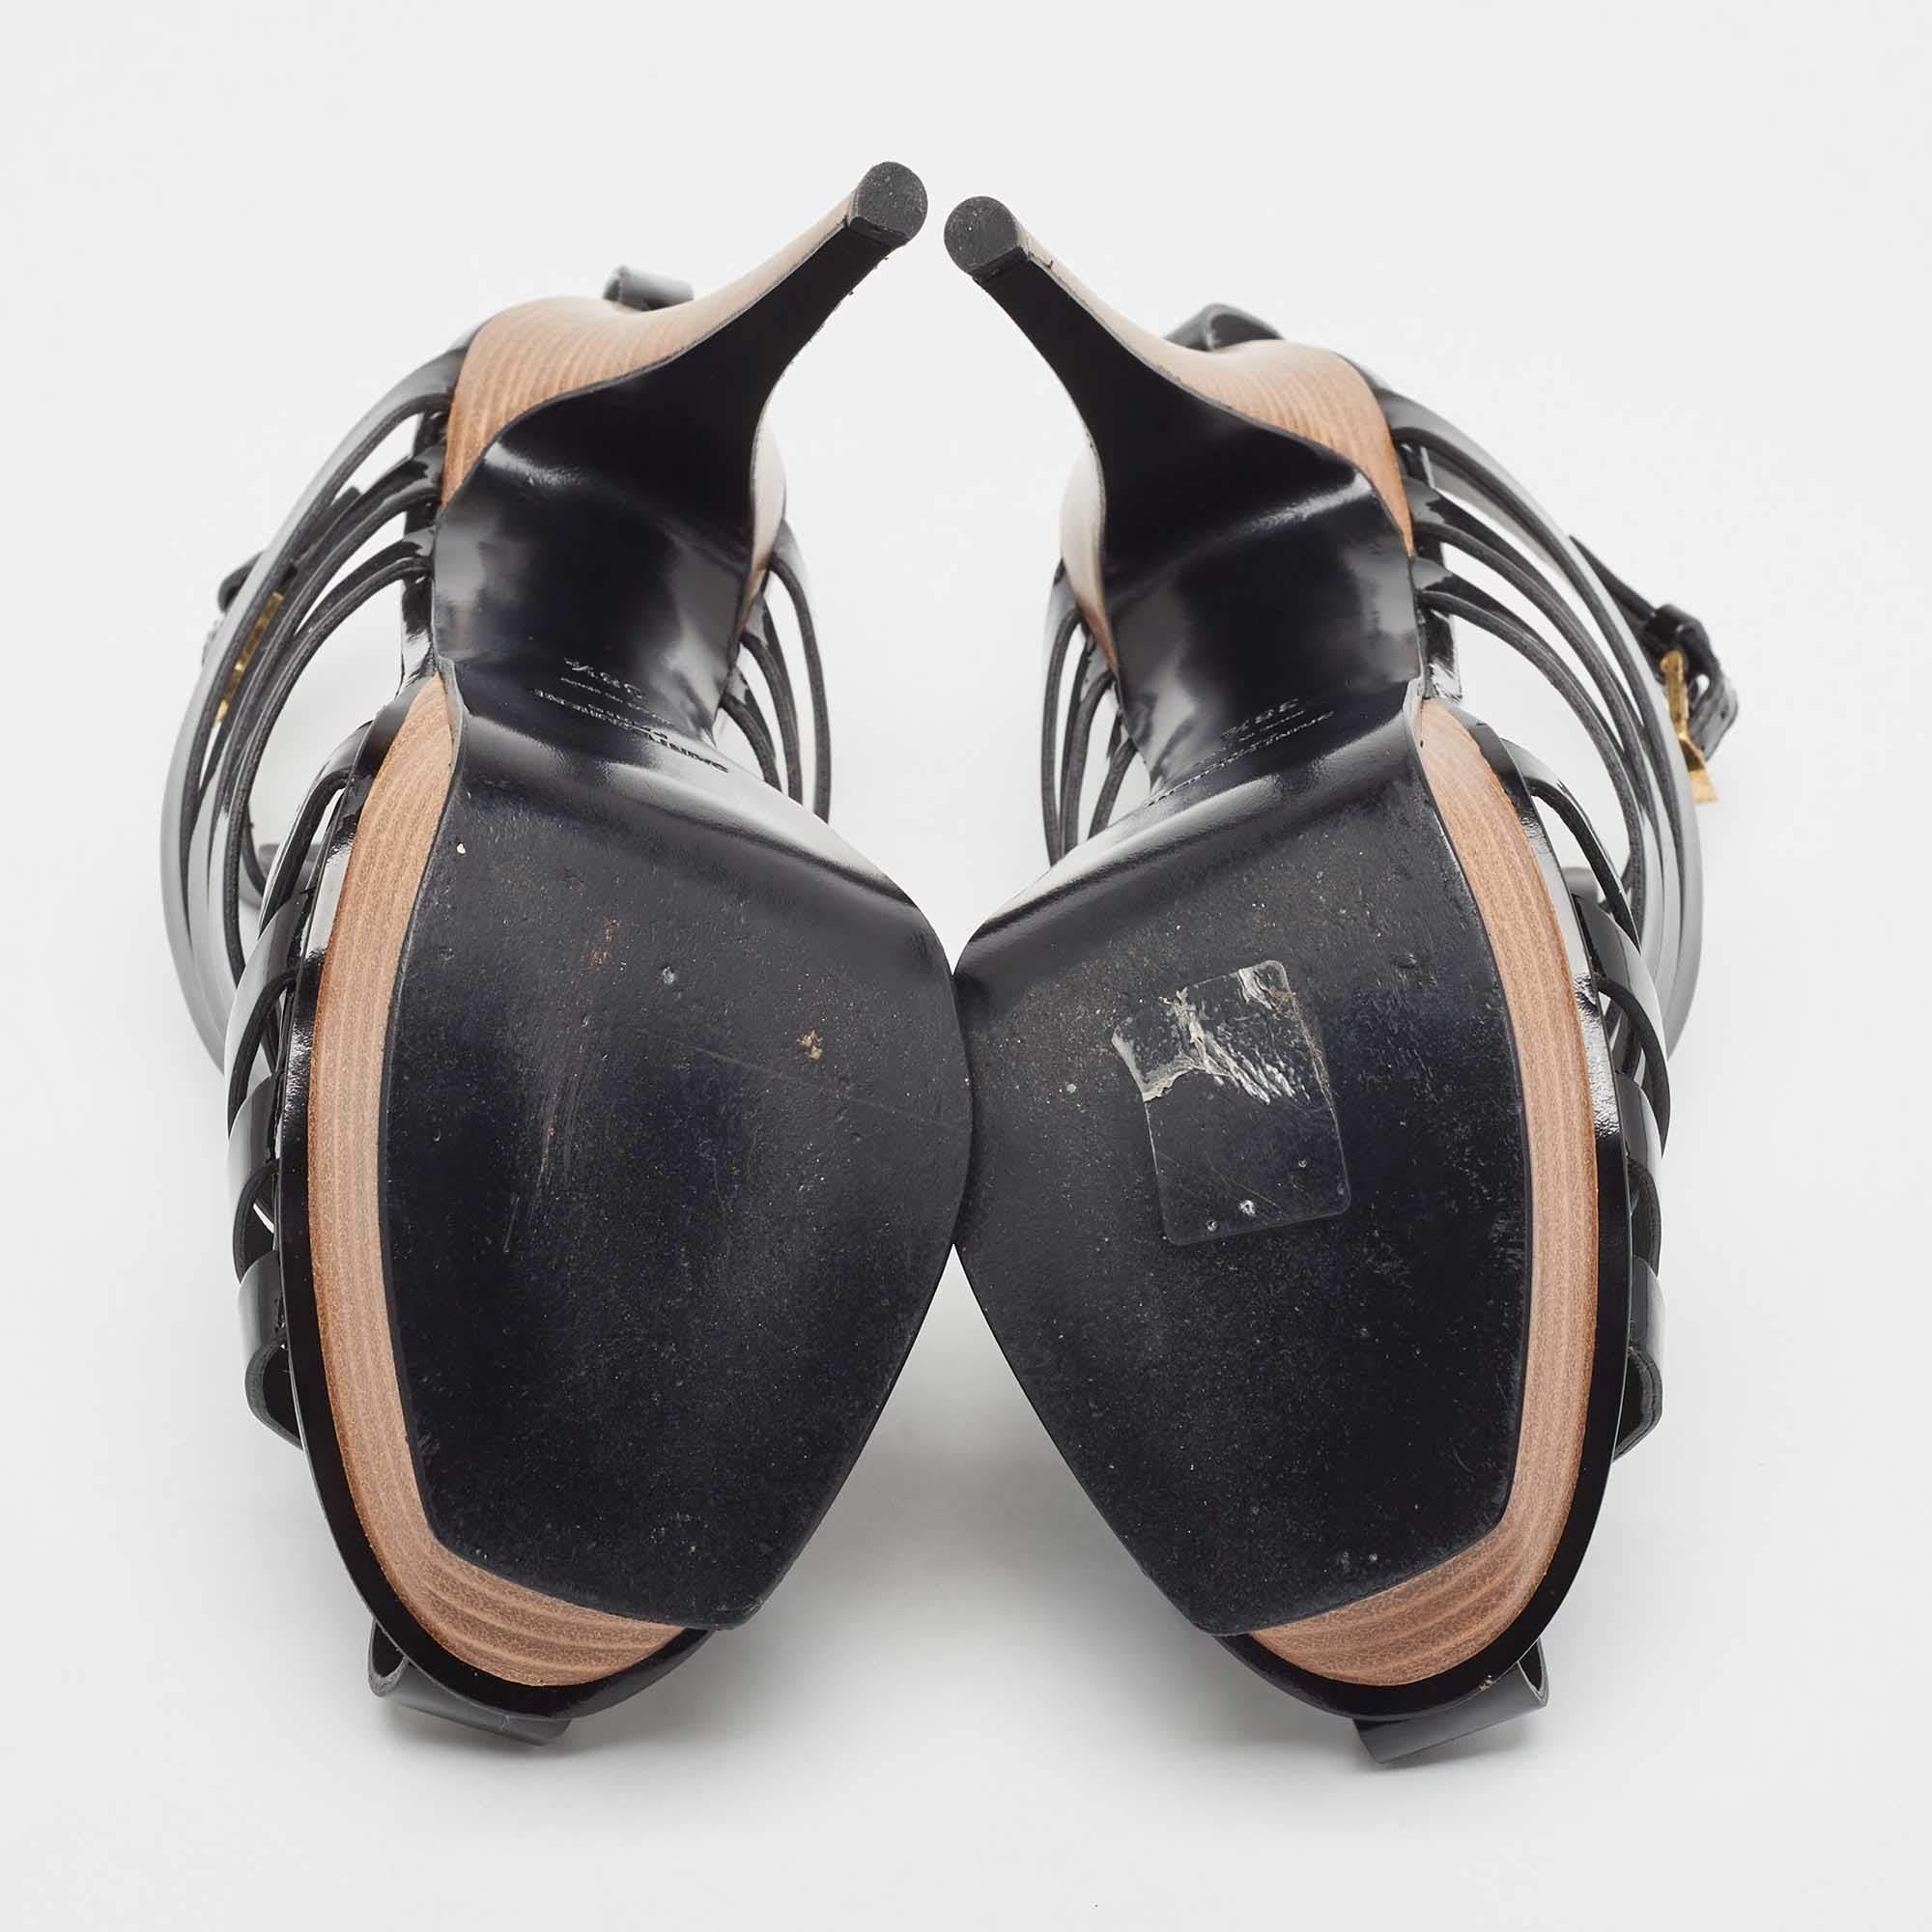 Saint Laurent Black Patent Leather Tribute Woodstock Sandals Size 38.5 2